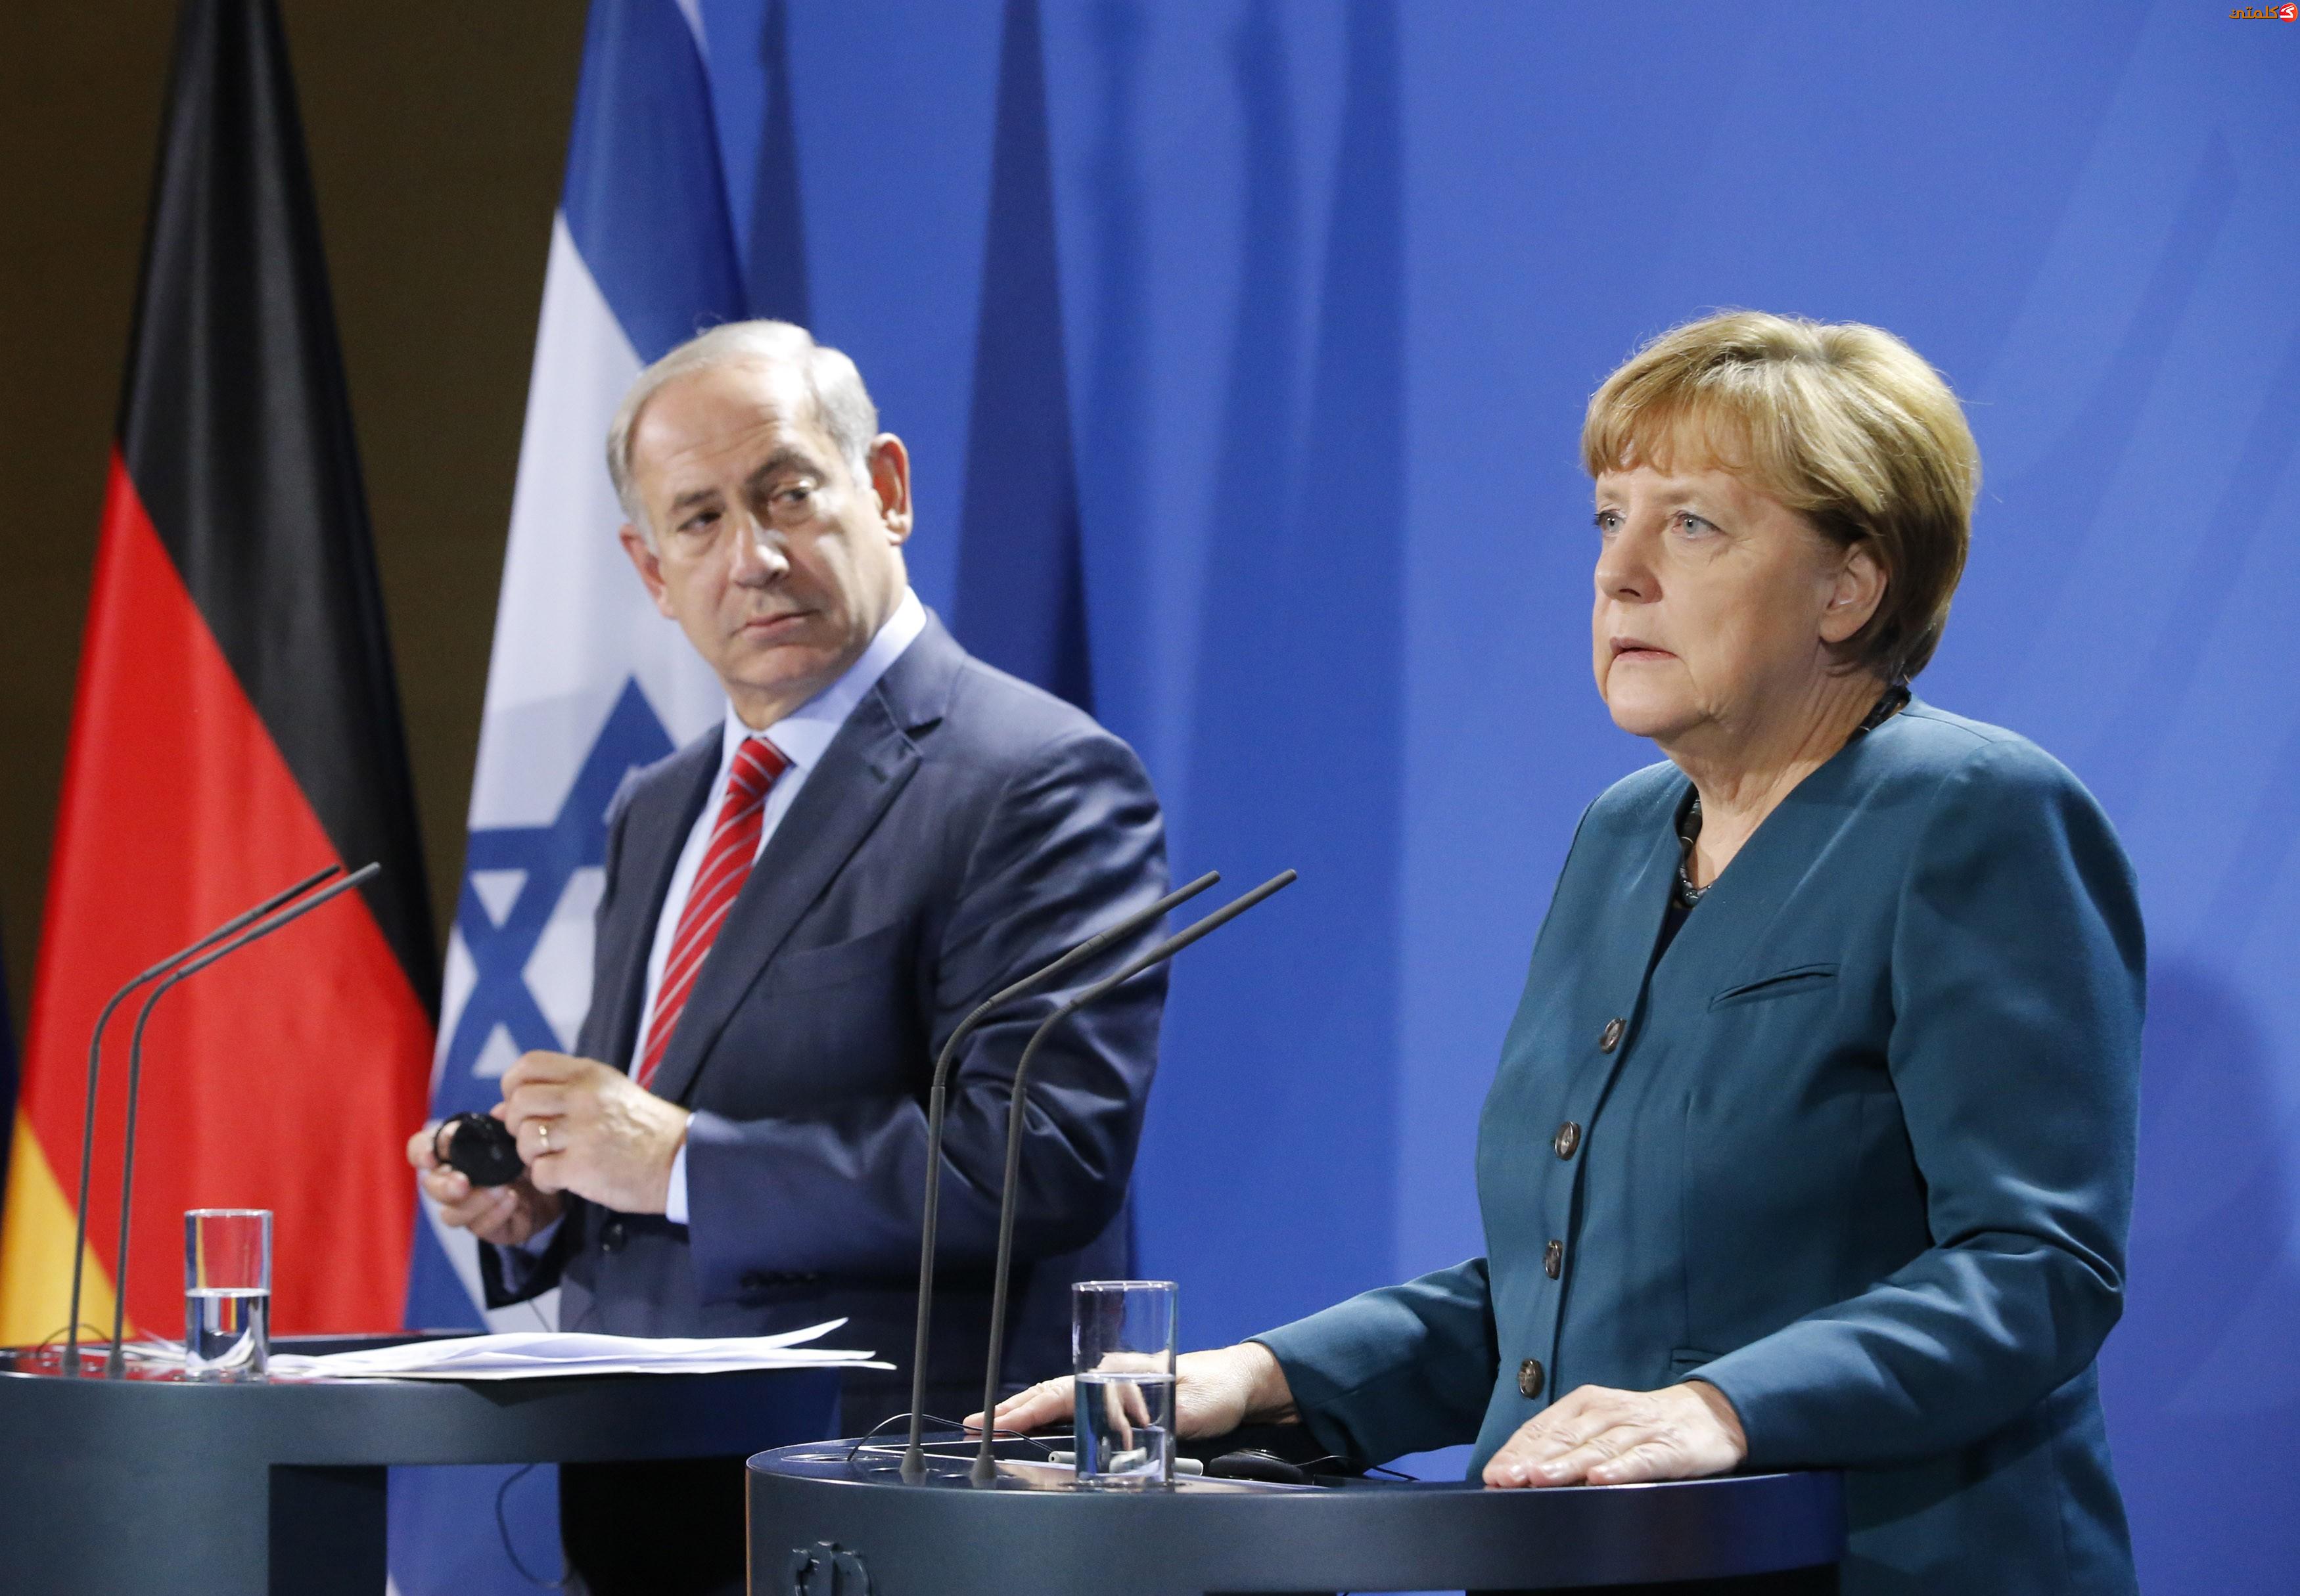 المانيا تقرر بشكل نهائي الغاء صفقة أسلحة ضخمة مع اسرائيل